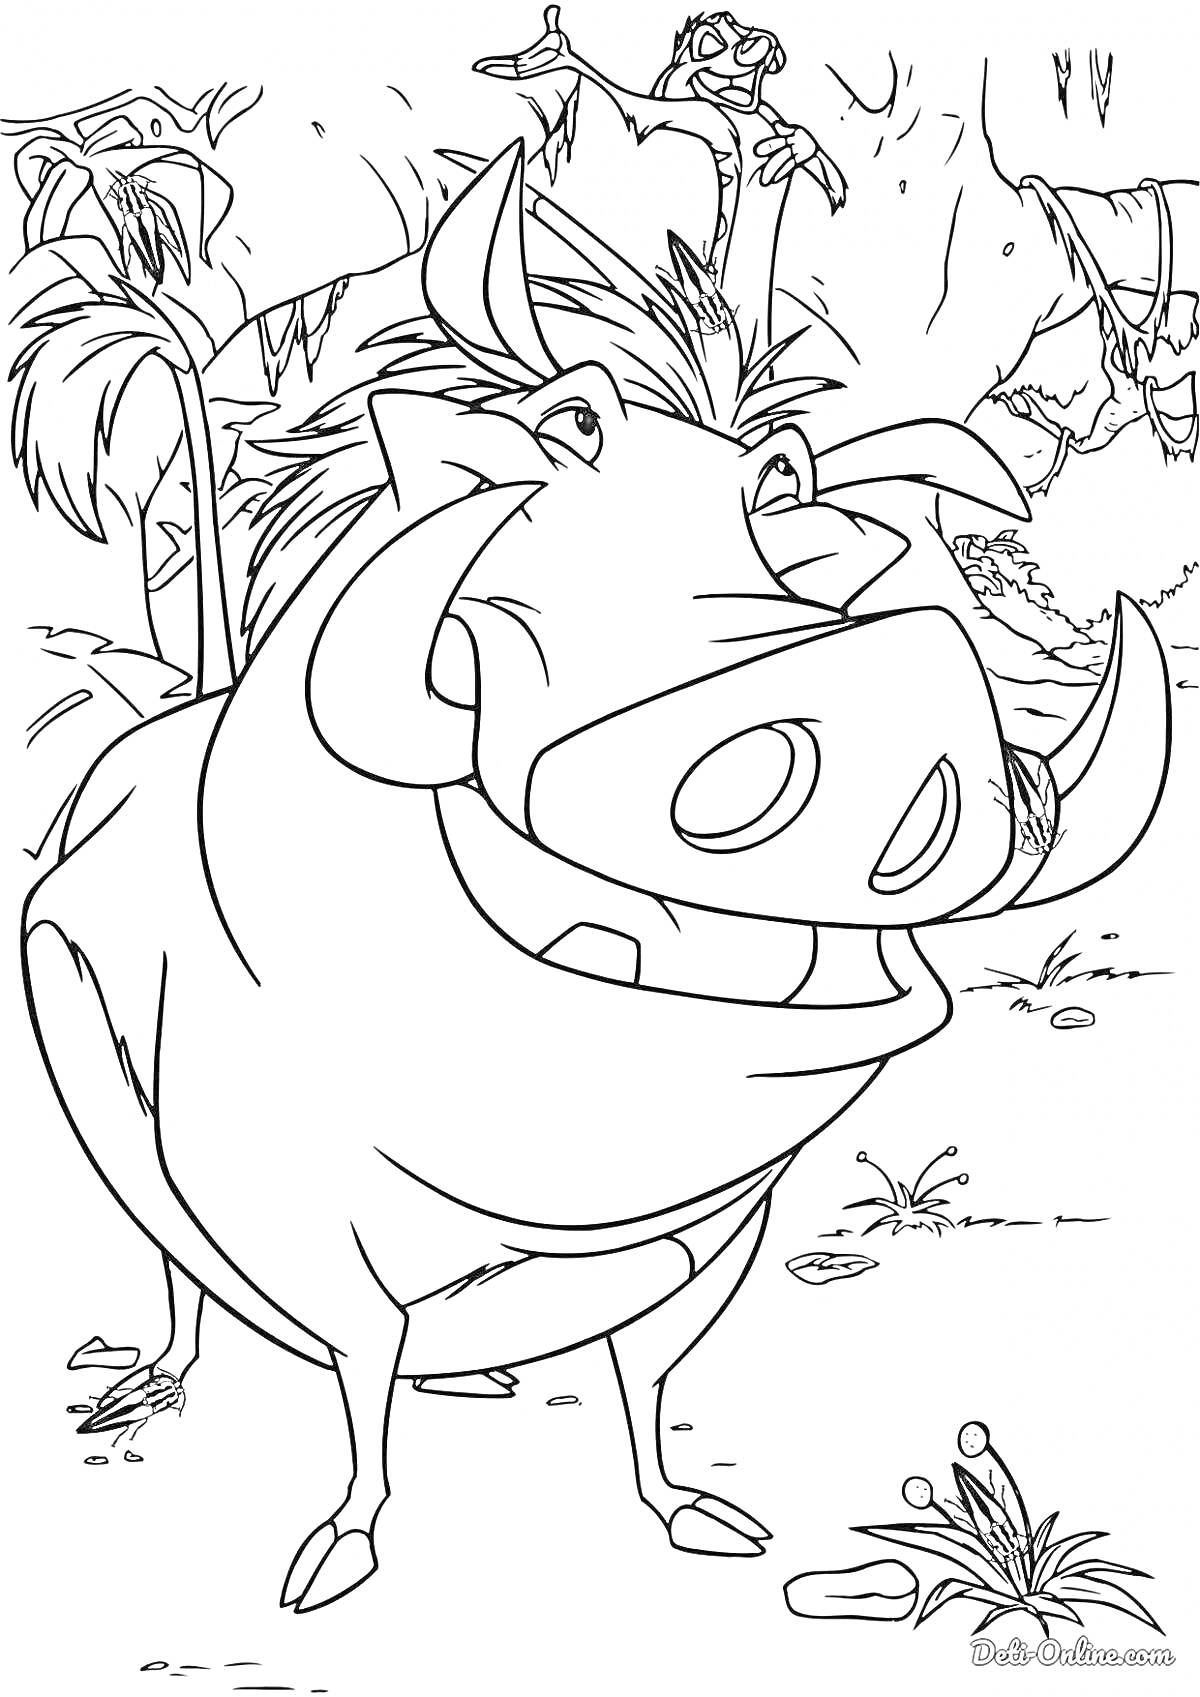 Раскраска Кабан в джунглях из популярного мультфильма